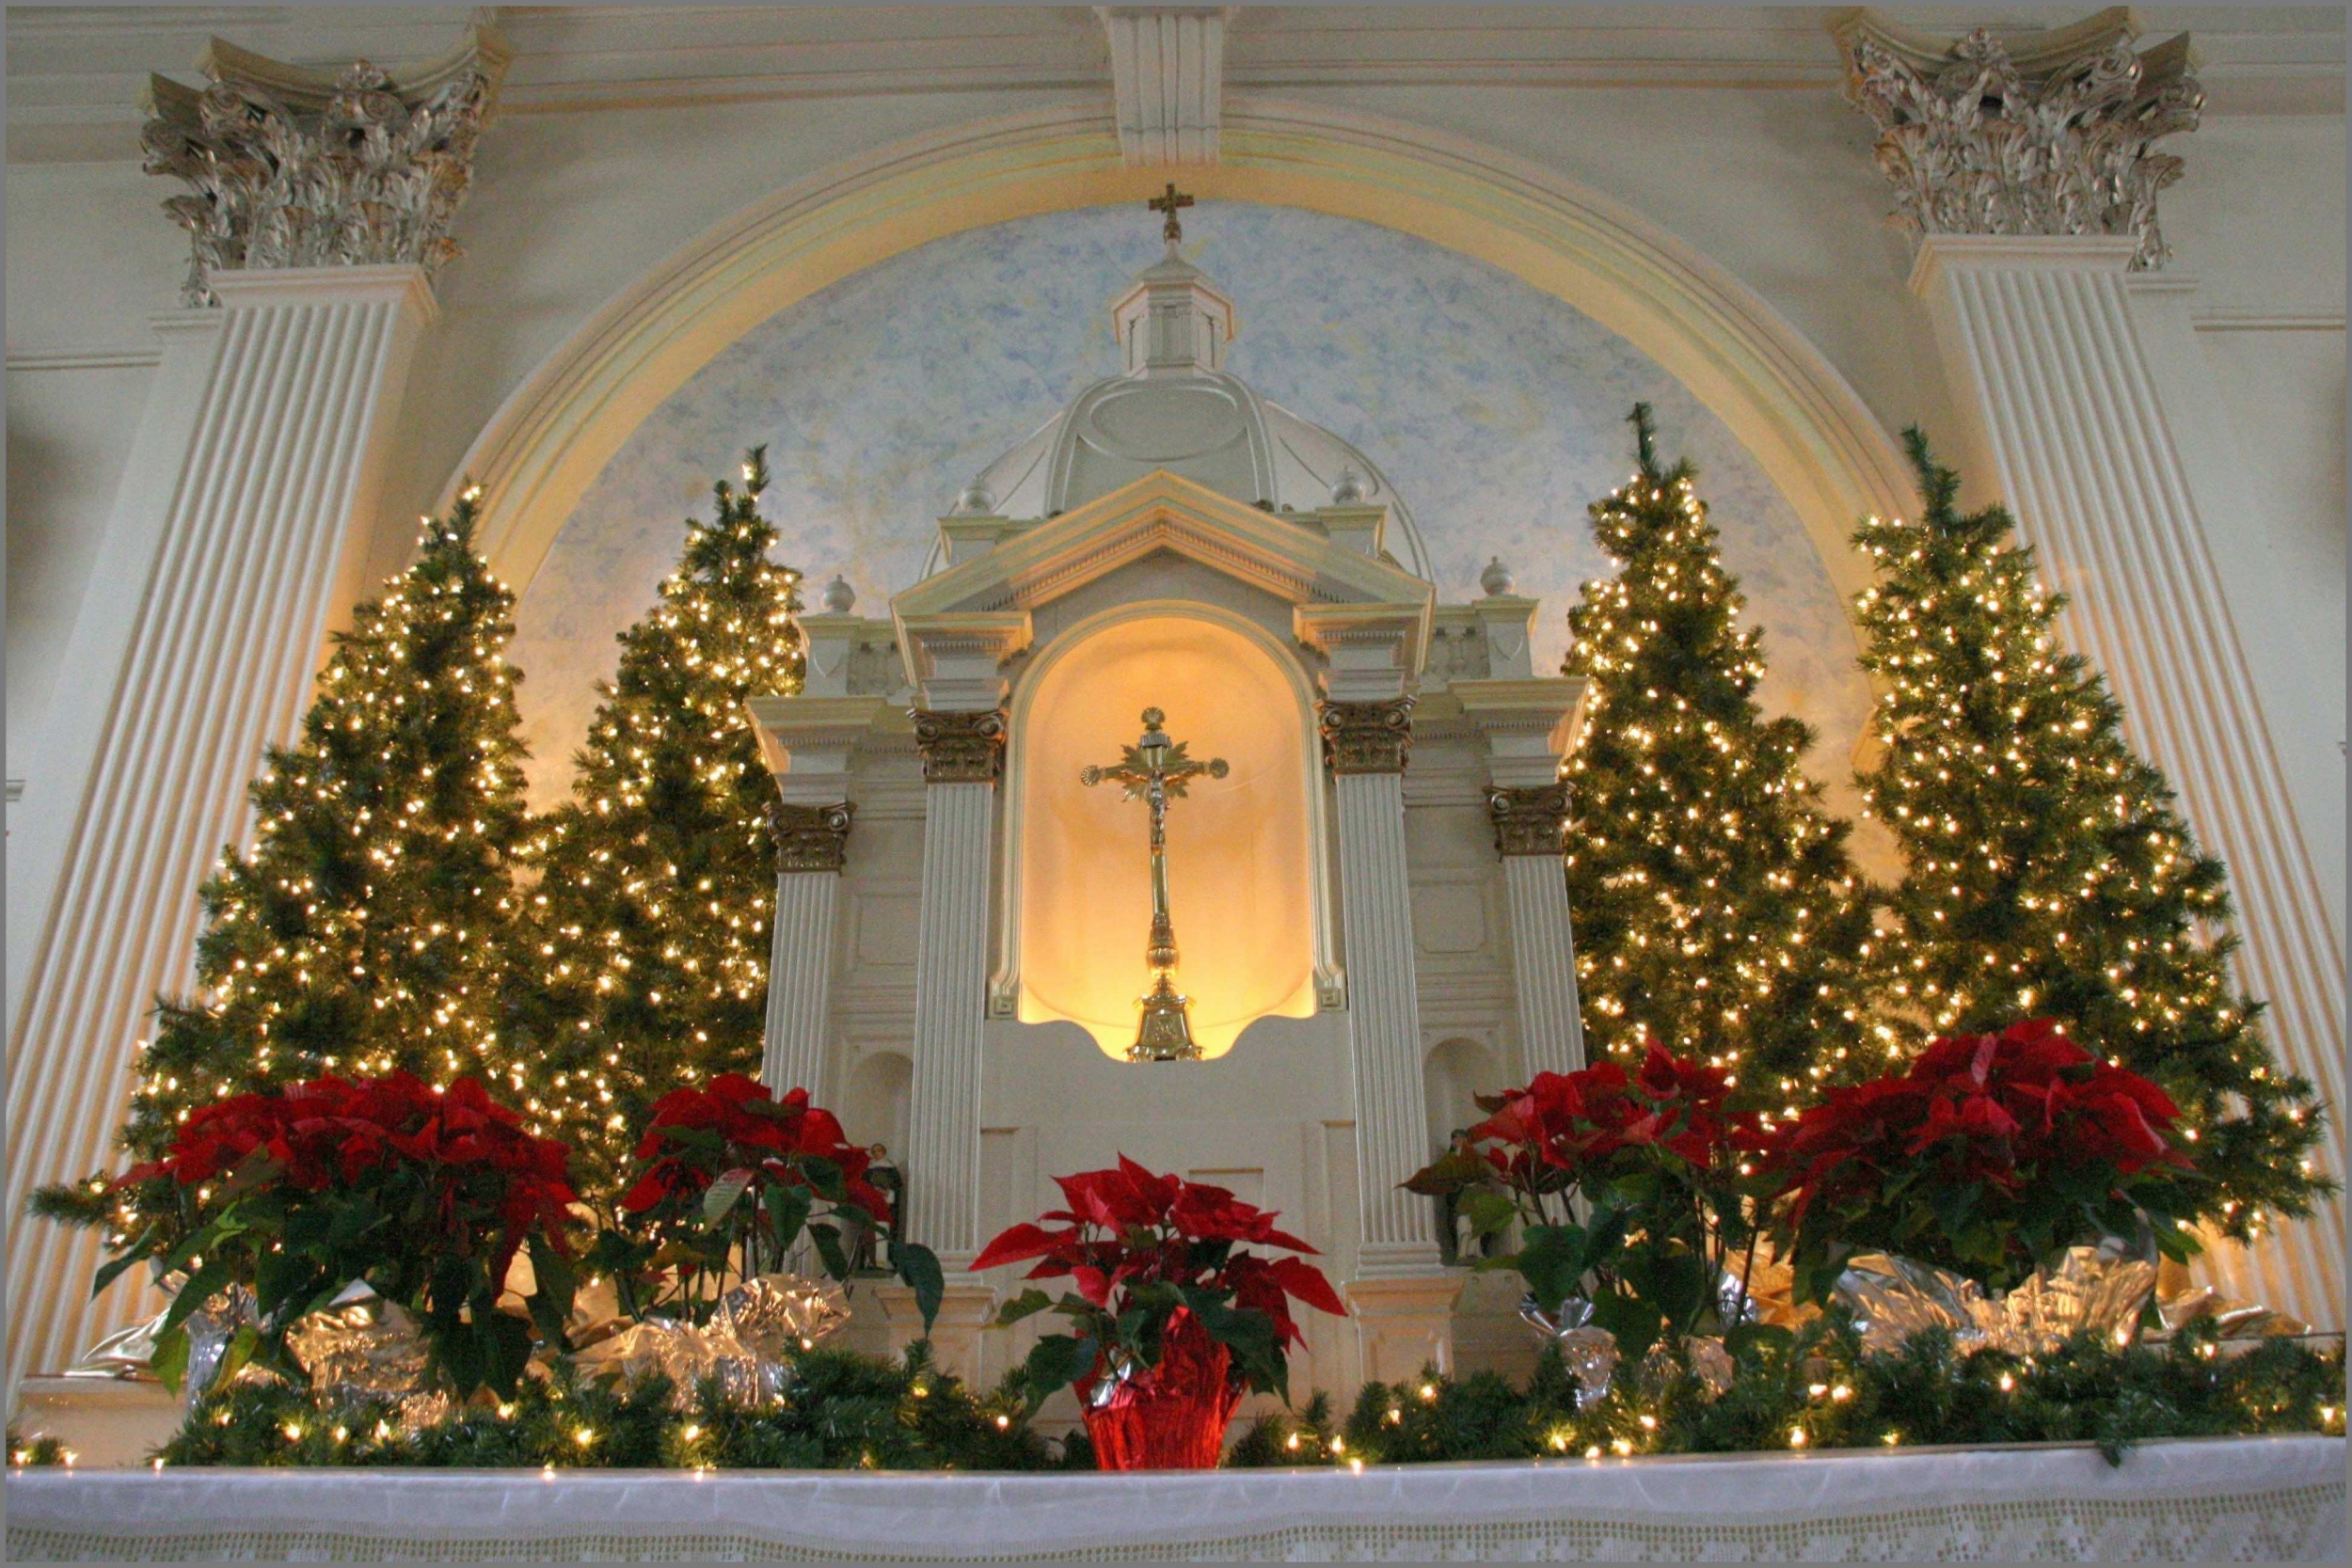 Trang trí Giáng sinh nhà thờ đẹp và ấm áp